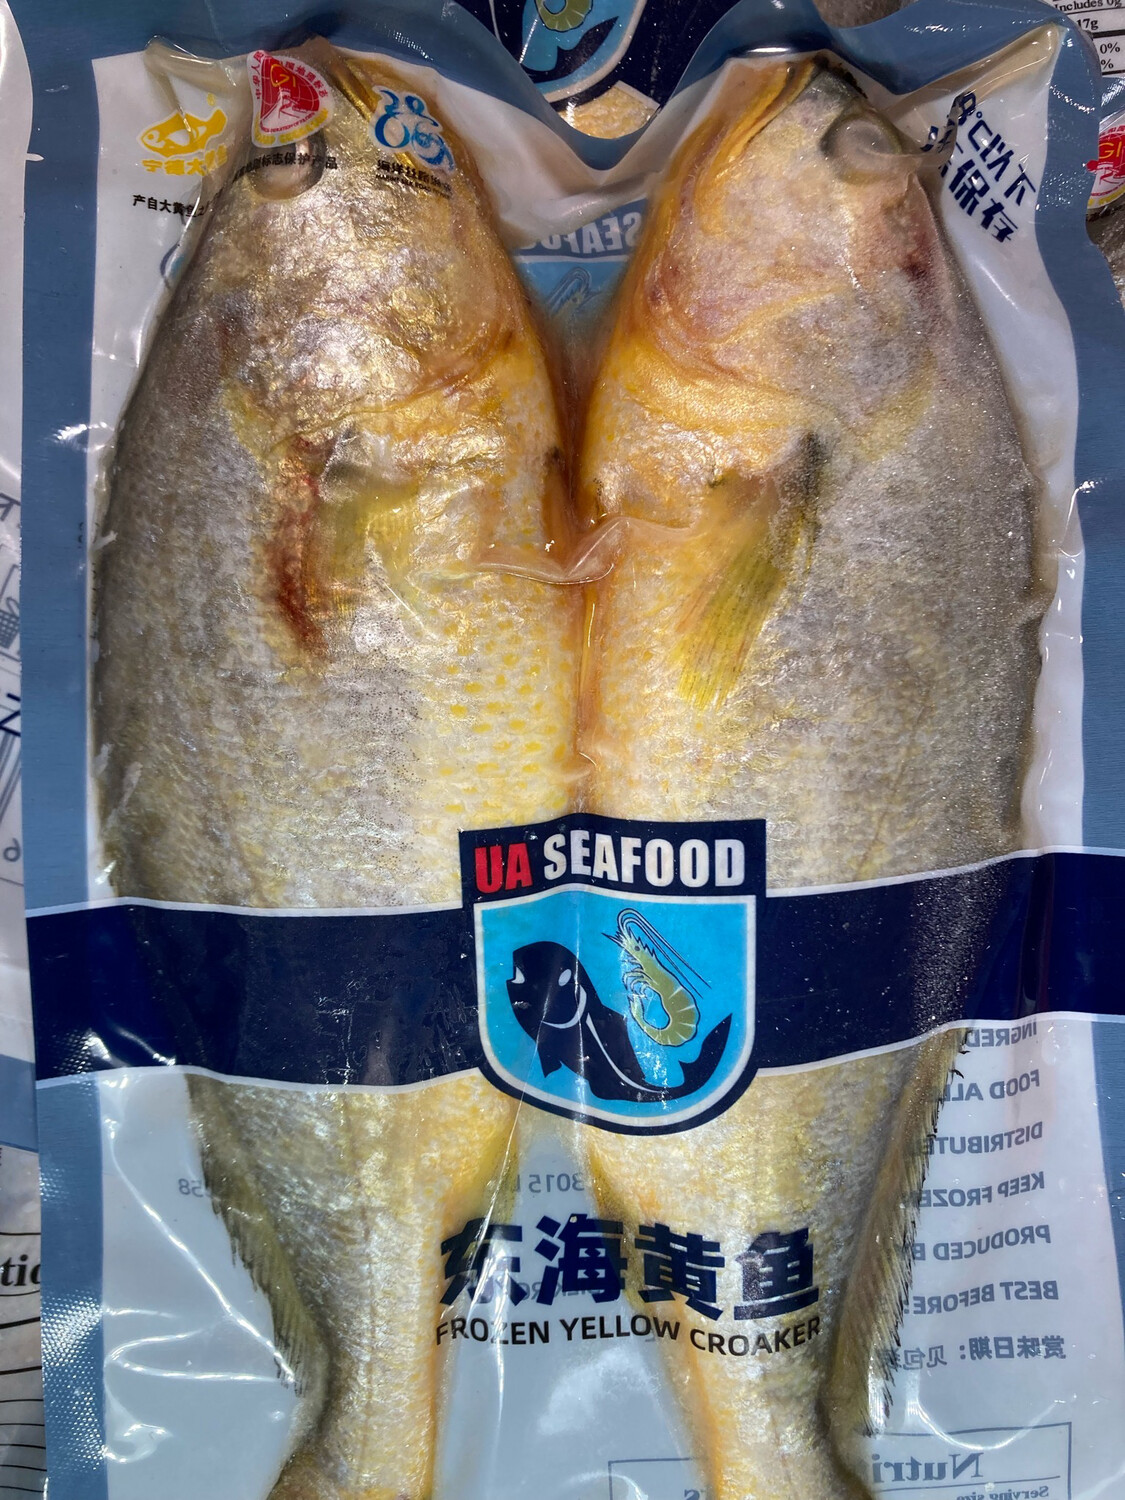 UA Seafood 东海黄鱼 2条/包  $6.99/包